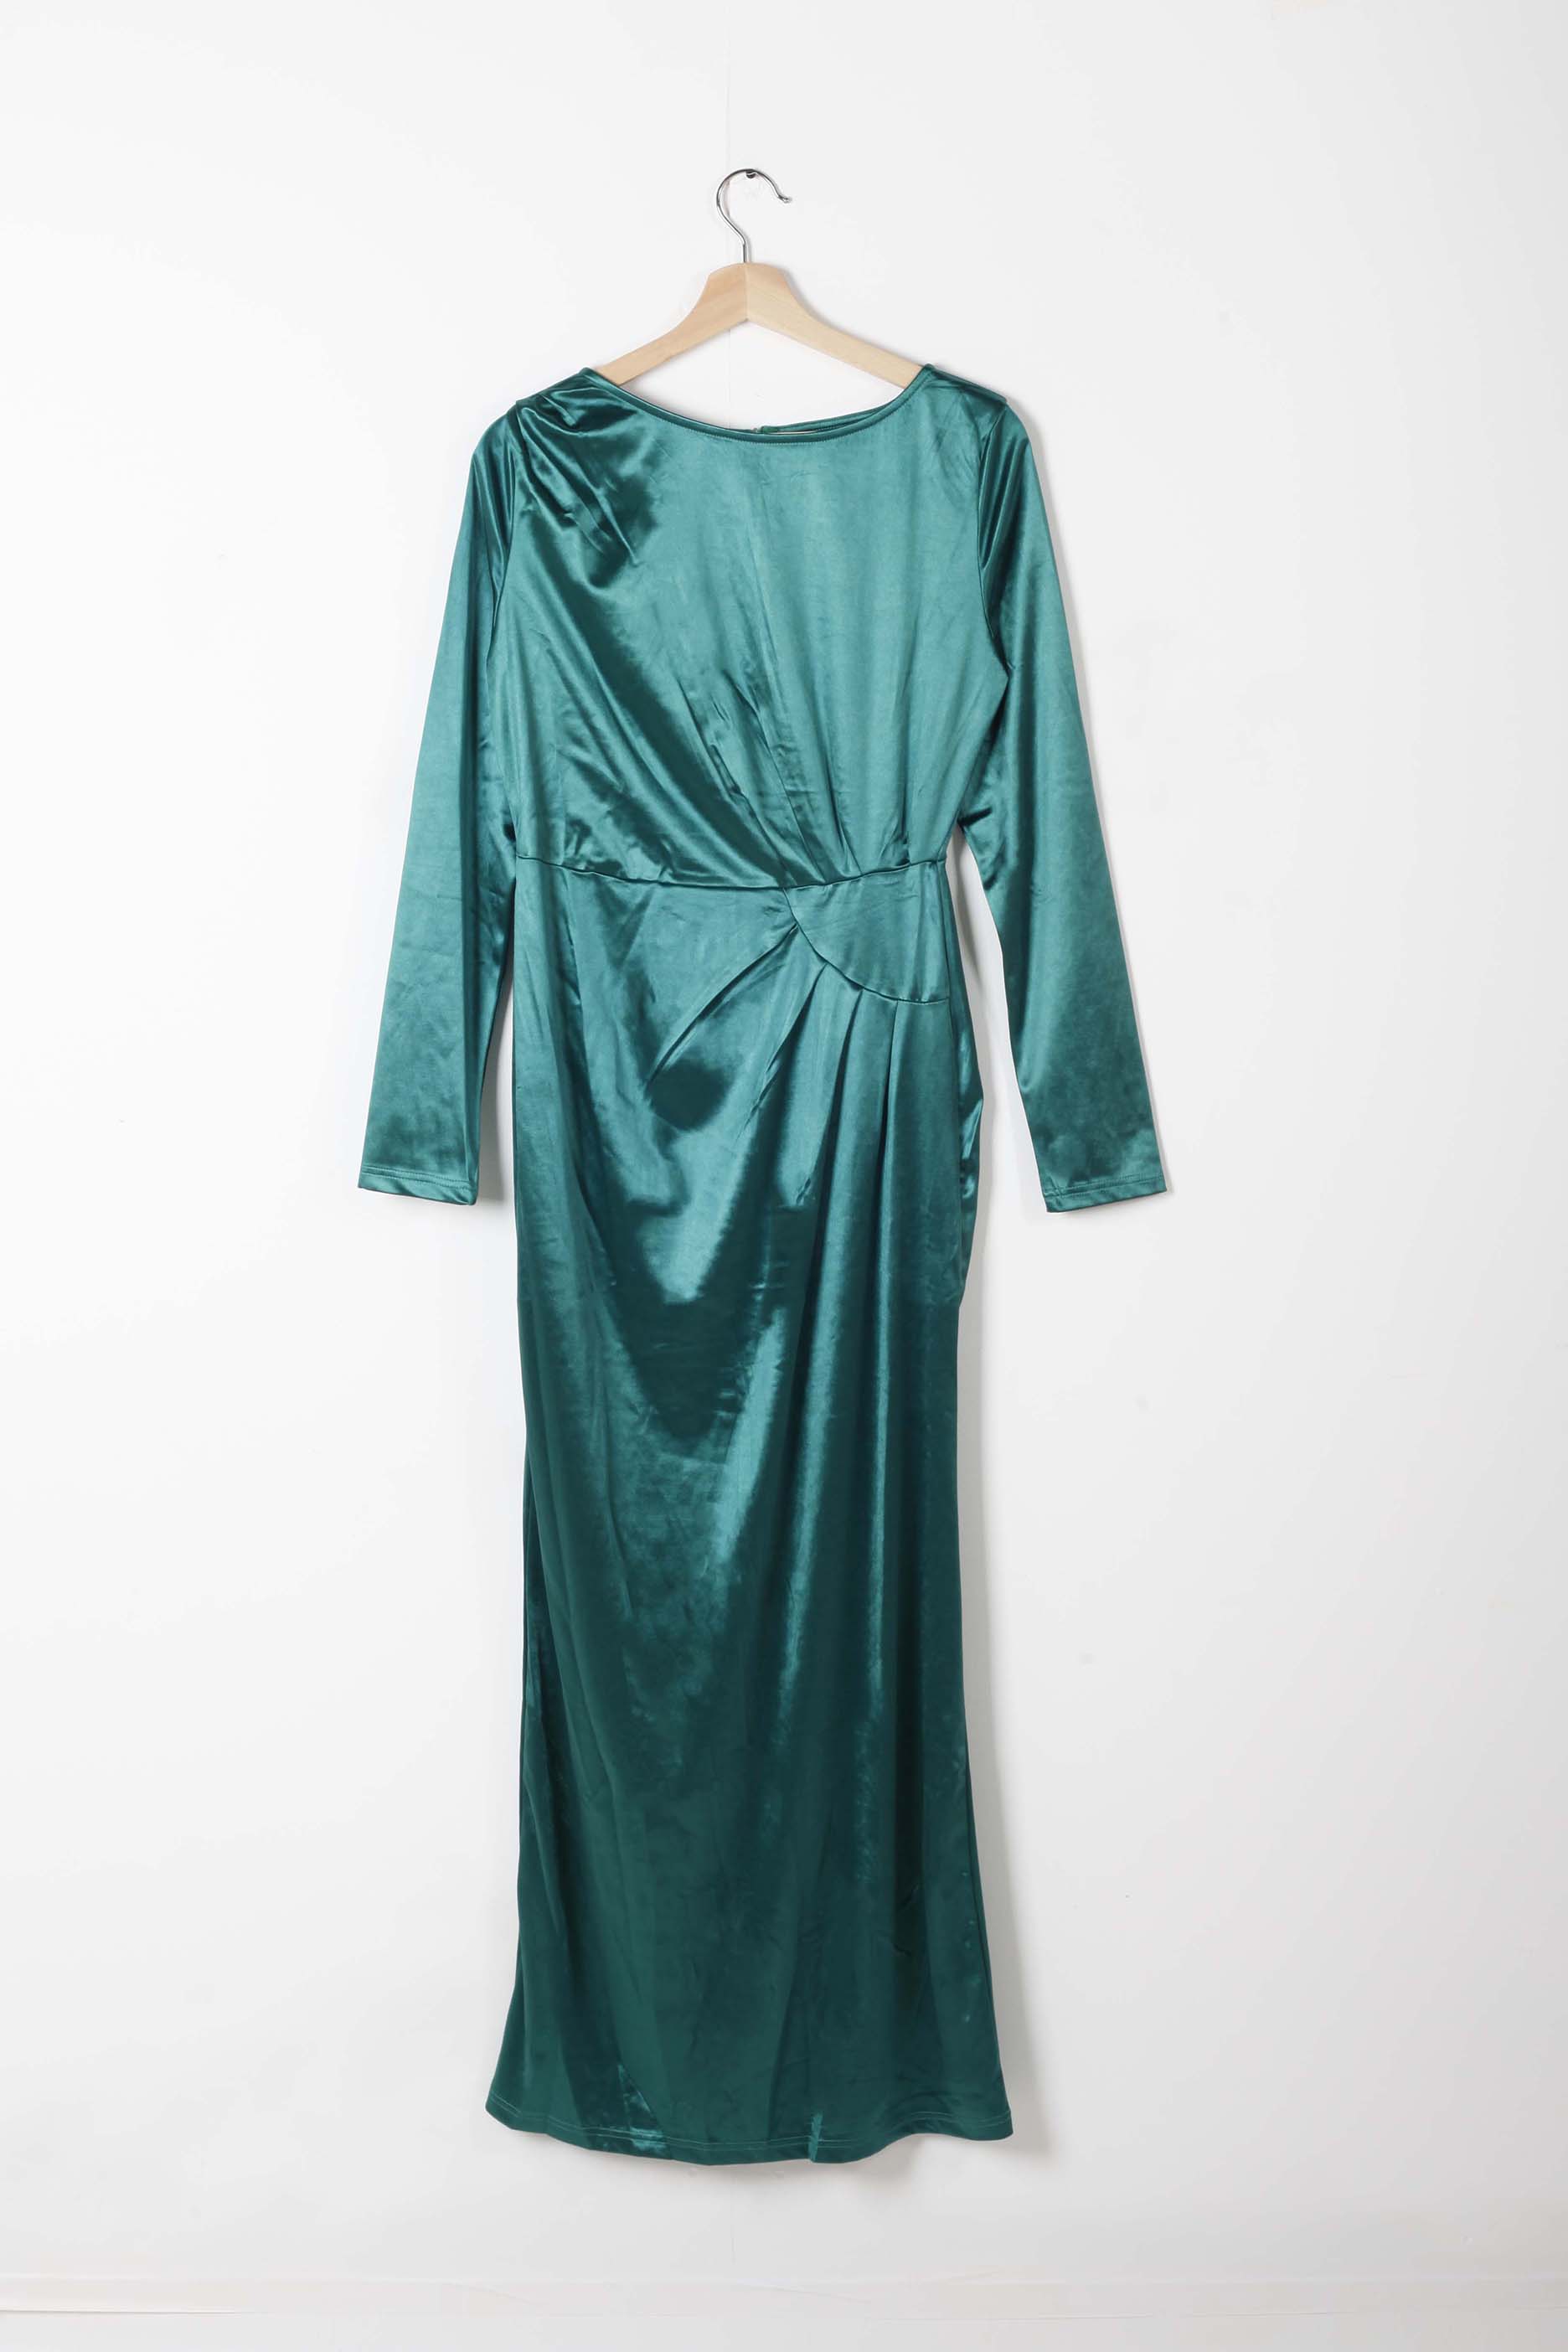 Full-length Emerald Stretch Satin Gown (Eu36-38)